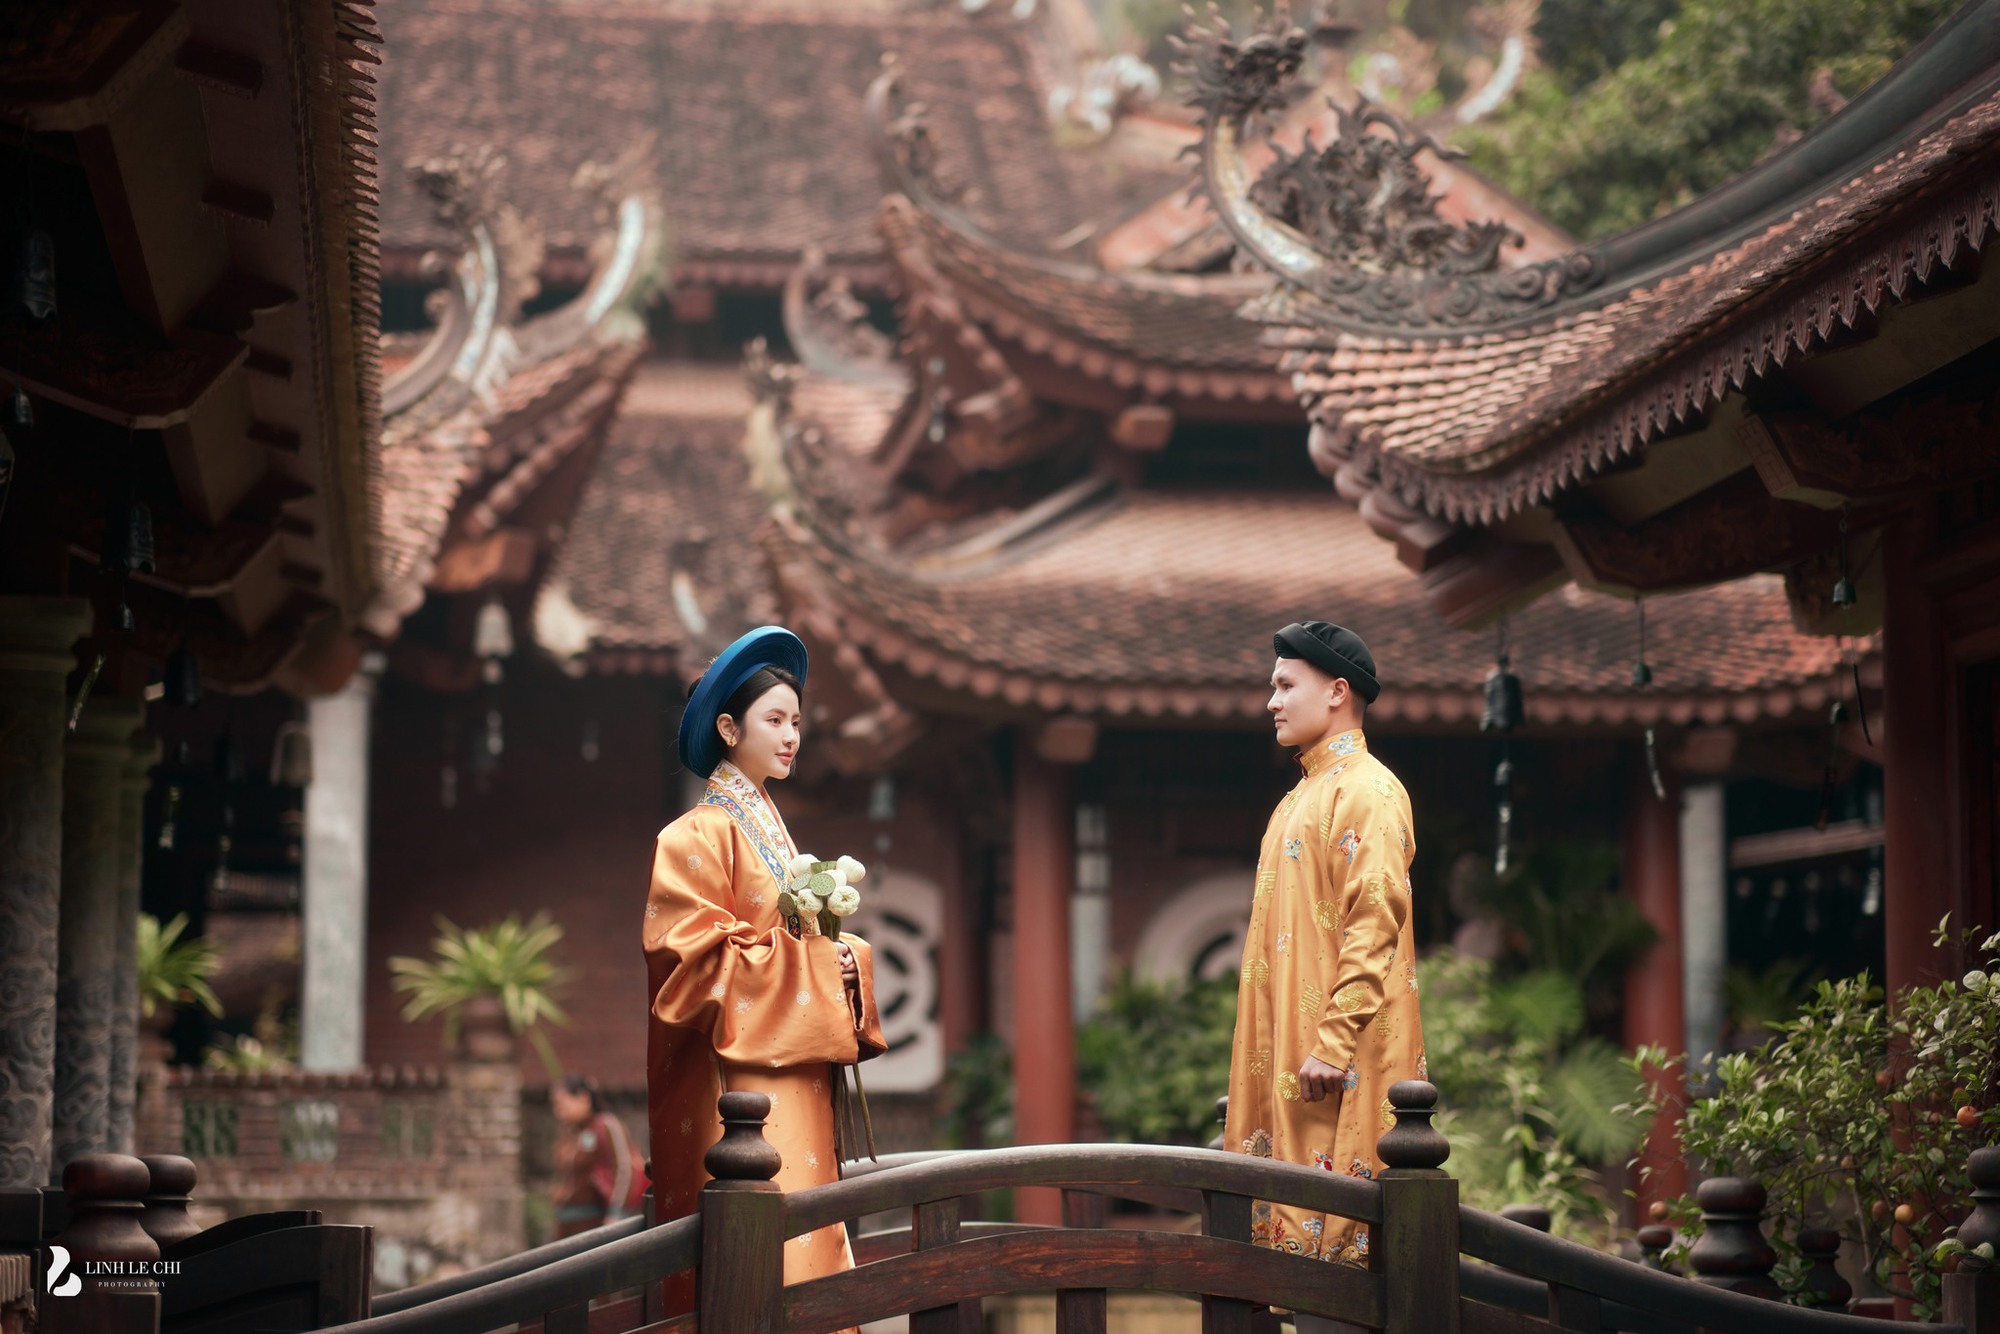 Ảnh cưới full HD của Quang Hải - Chu Thanh Huyền, chú rể chấp nhận lùi về sau làm nền để vợ tỏa sáng- Ảnh 2.